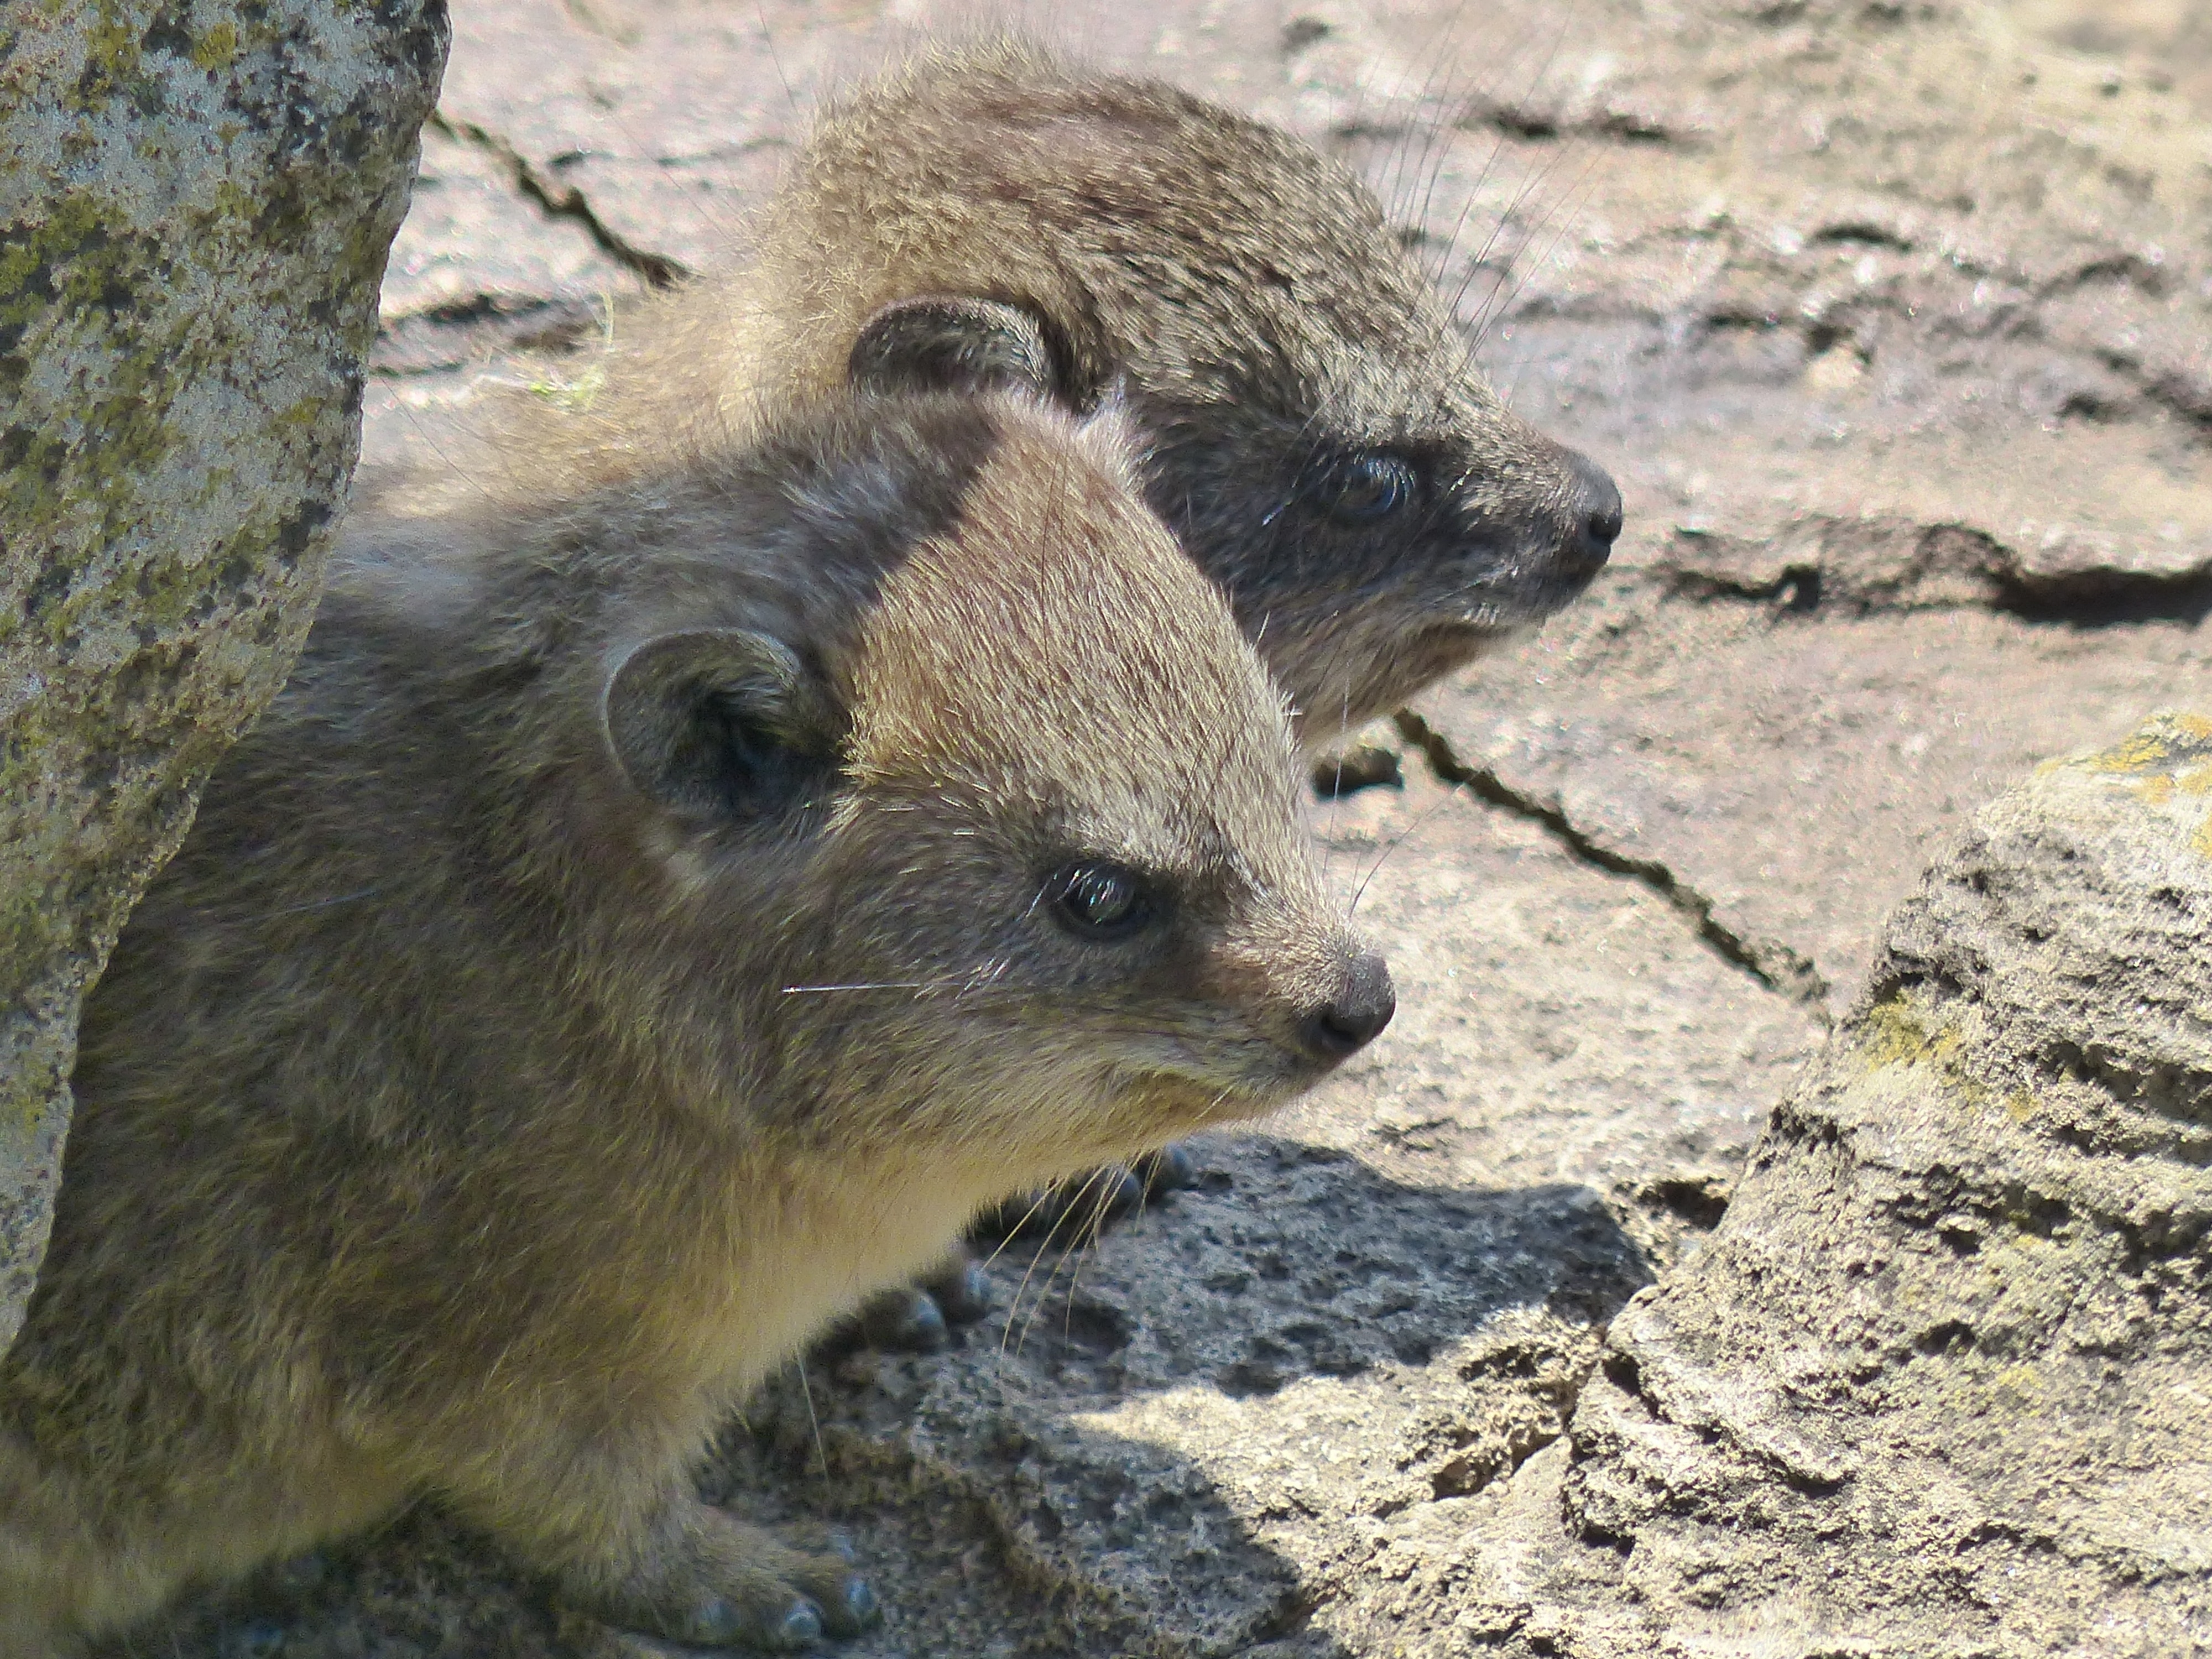 2 grey short fur animal during daytime